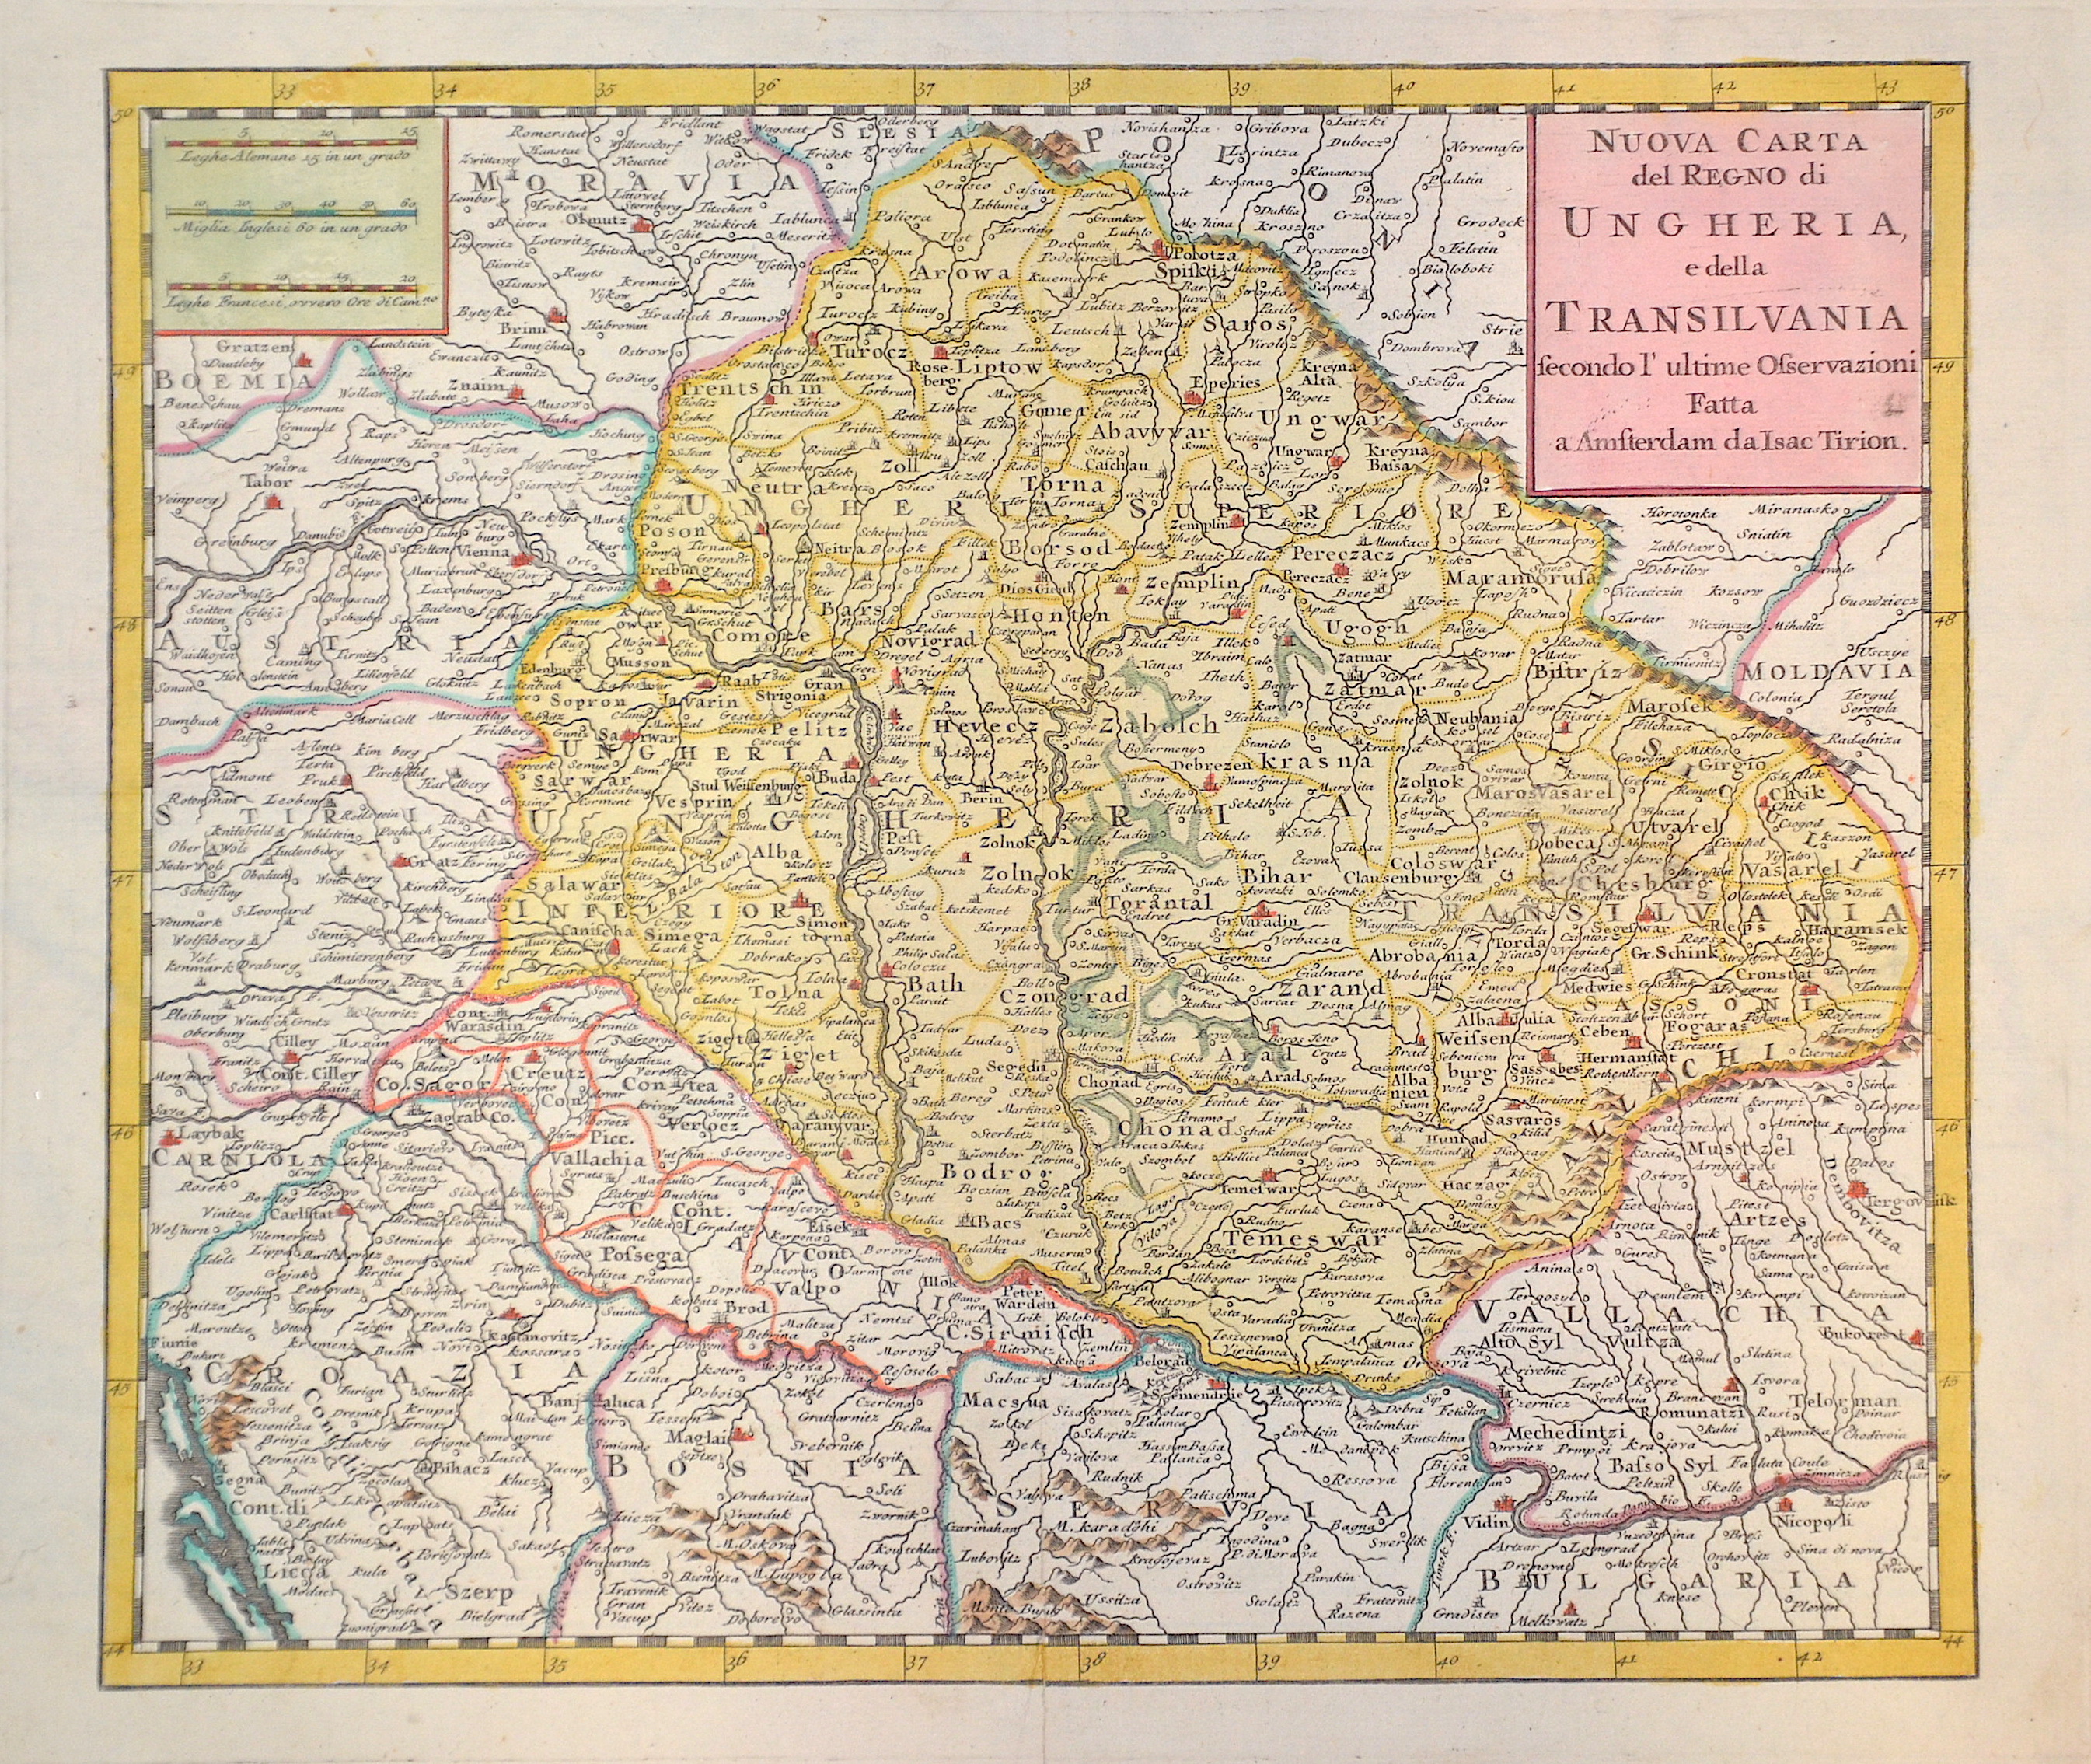 Tirion Isaak Nuova Carta de regno di Ungheria e della Transilvania…